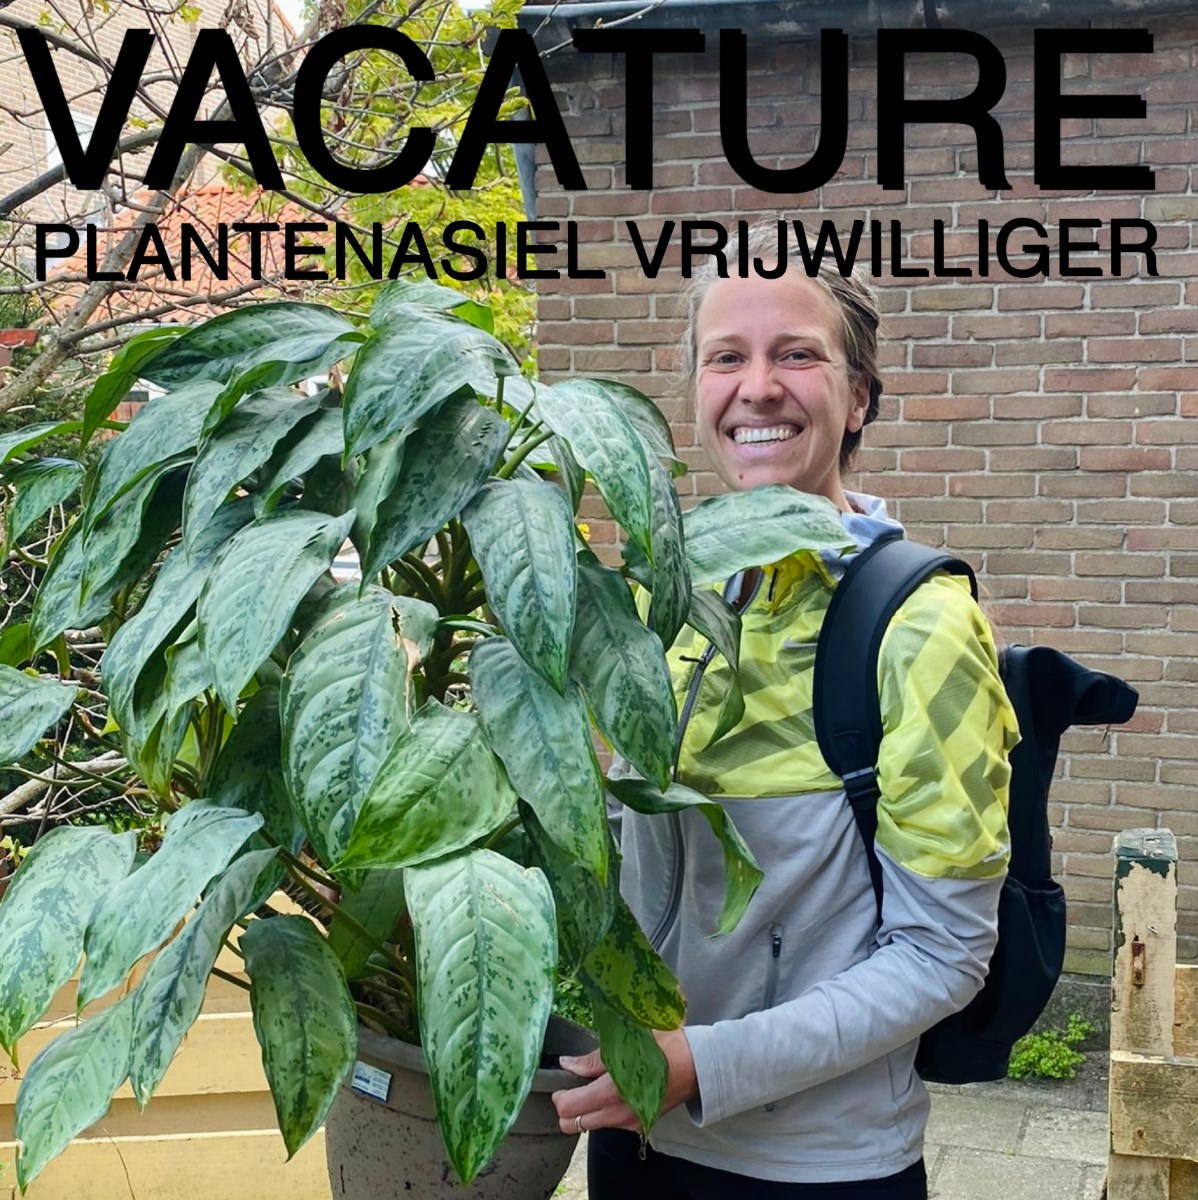 Bericht Vacature: plantenasiel vrijwilliger bekijken